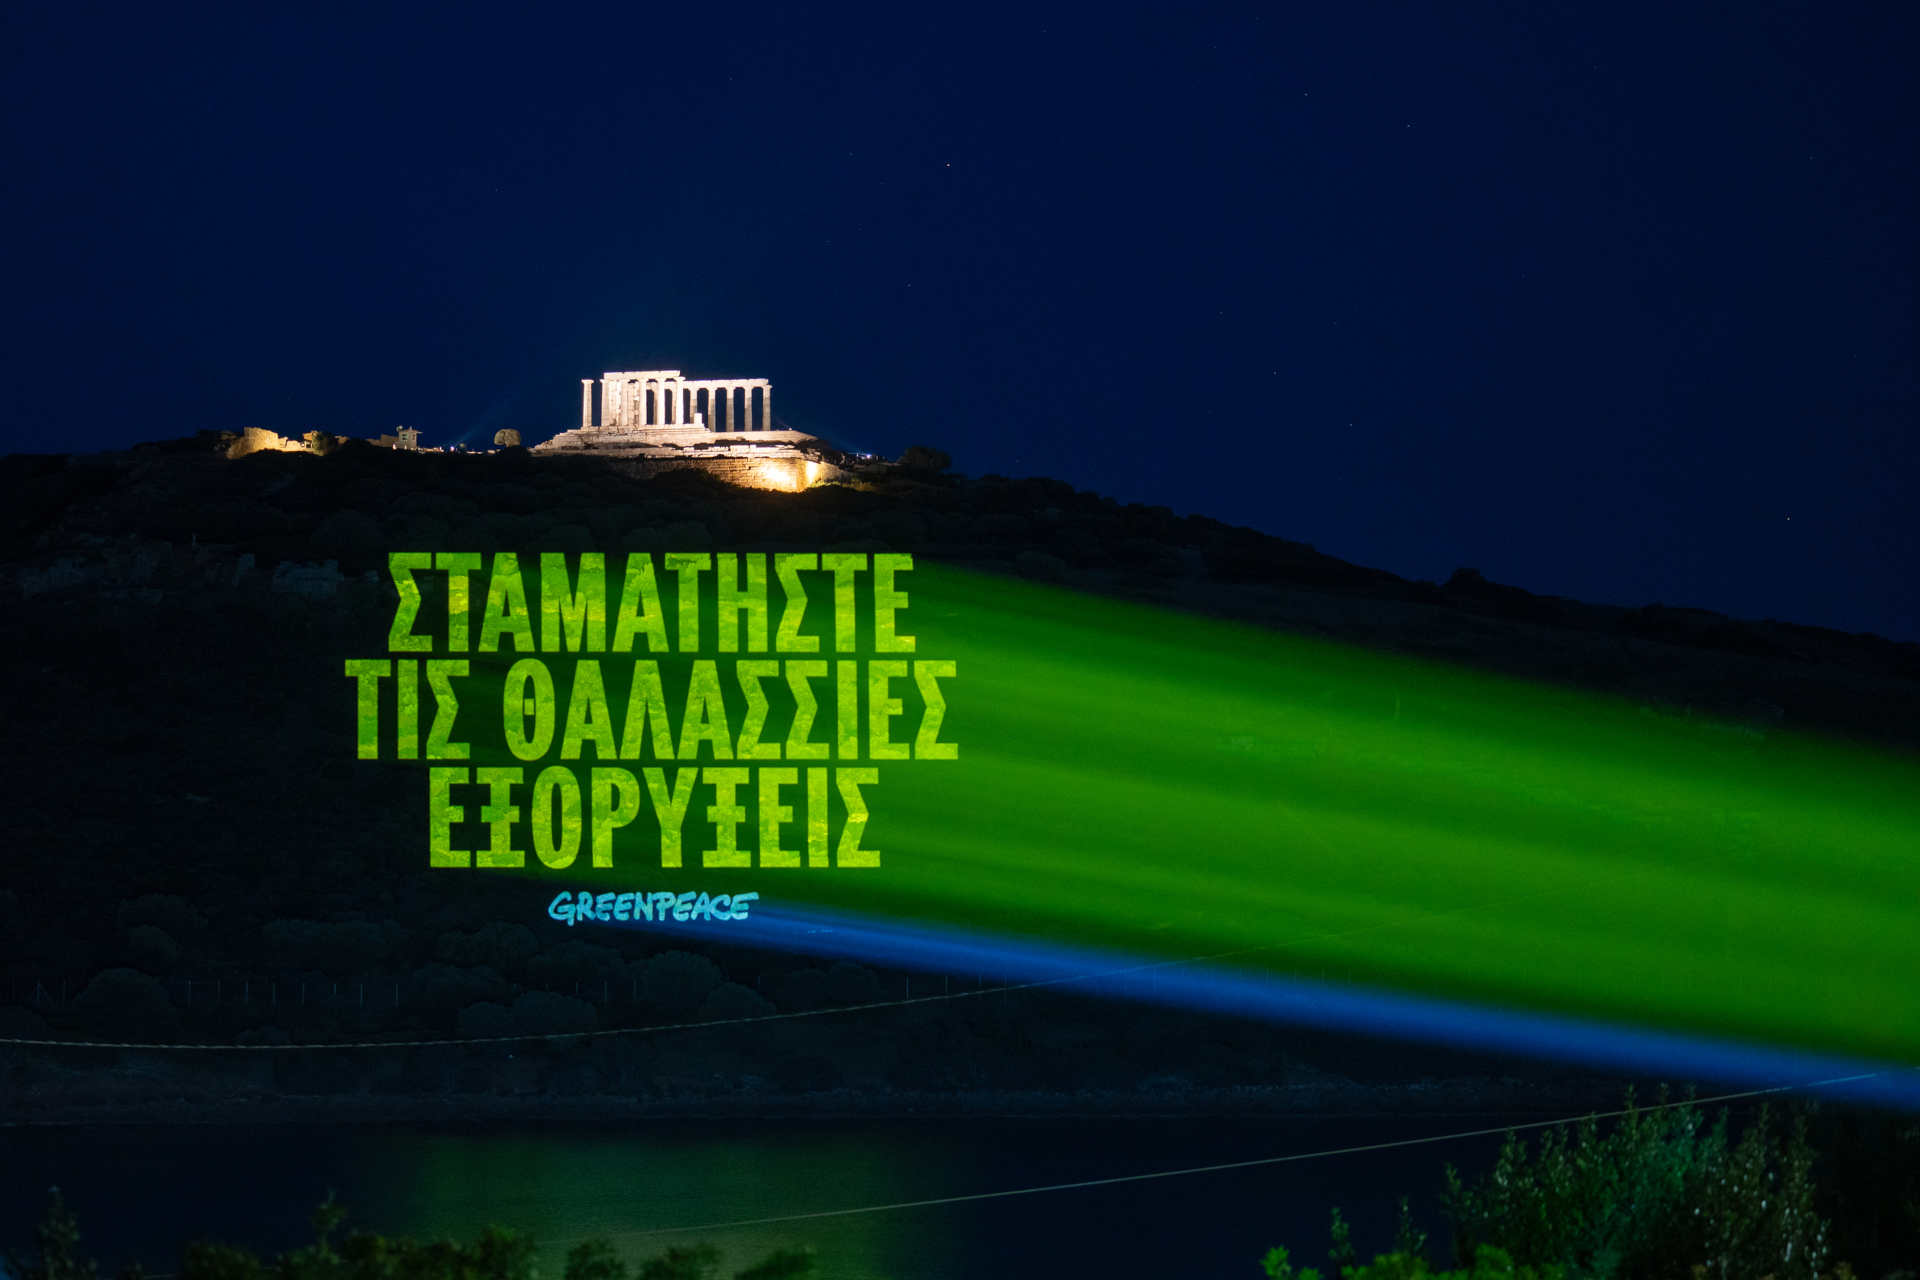 Grecia: il messaggio in greco che recita "Stop Deep Sea Mining" vicino al Tempio di Poseidone